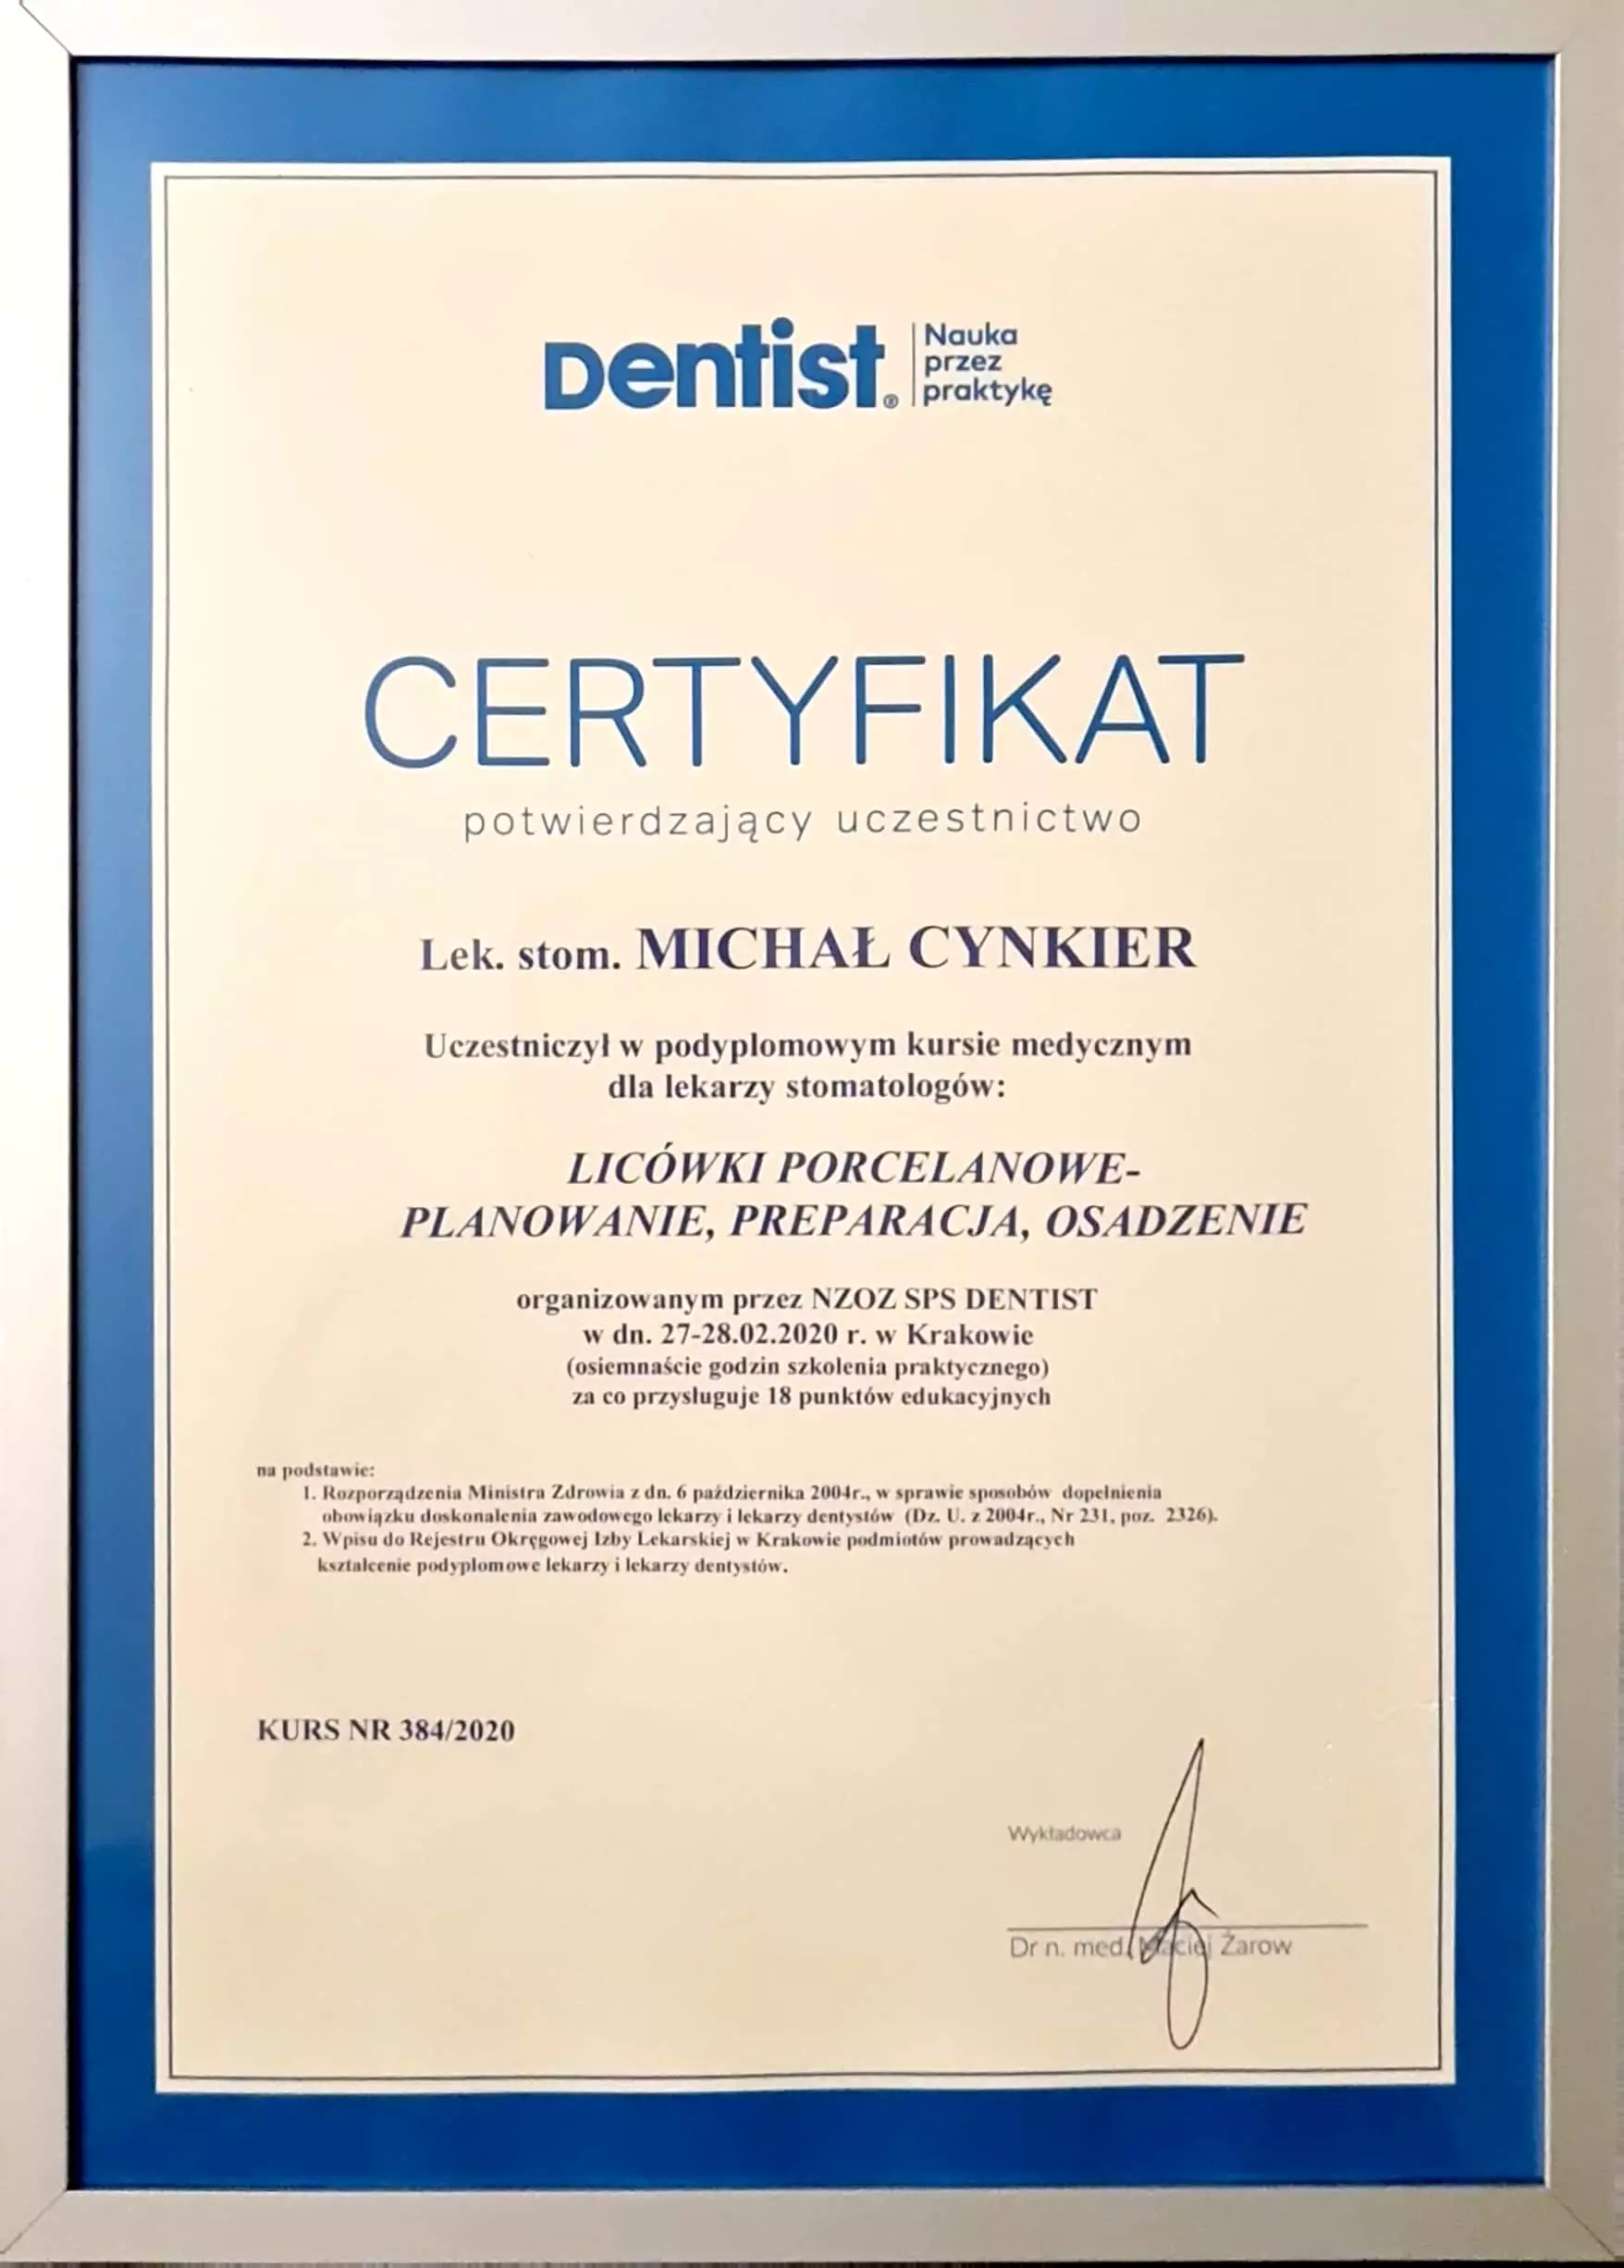 Certyfikat Michała Cynkiera z kursu licówki porcelanowe potwierdza umiejętności dentysty.